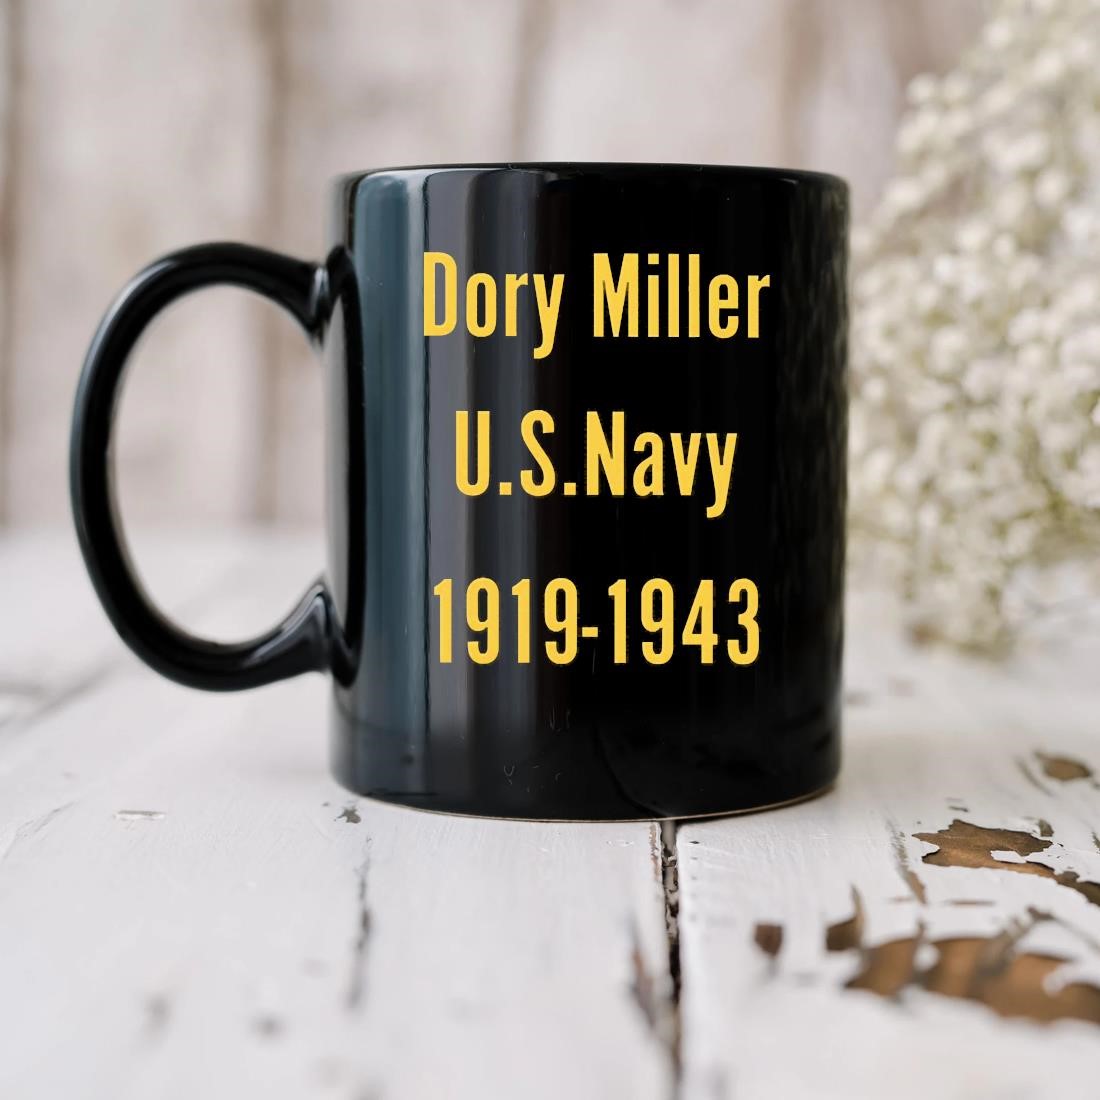 Dory Miller U.s.navy 1919-1943 Mug biu.jpg